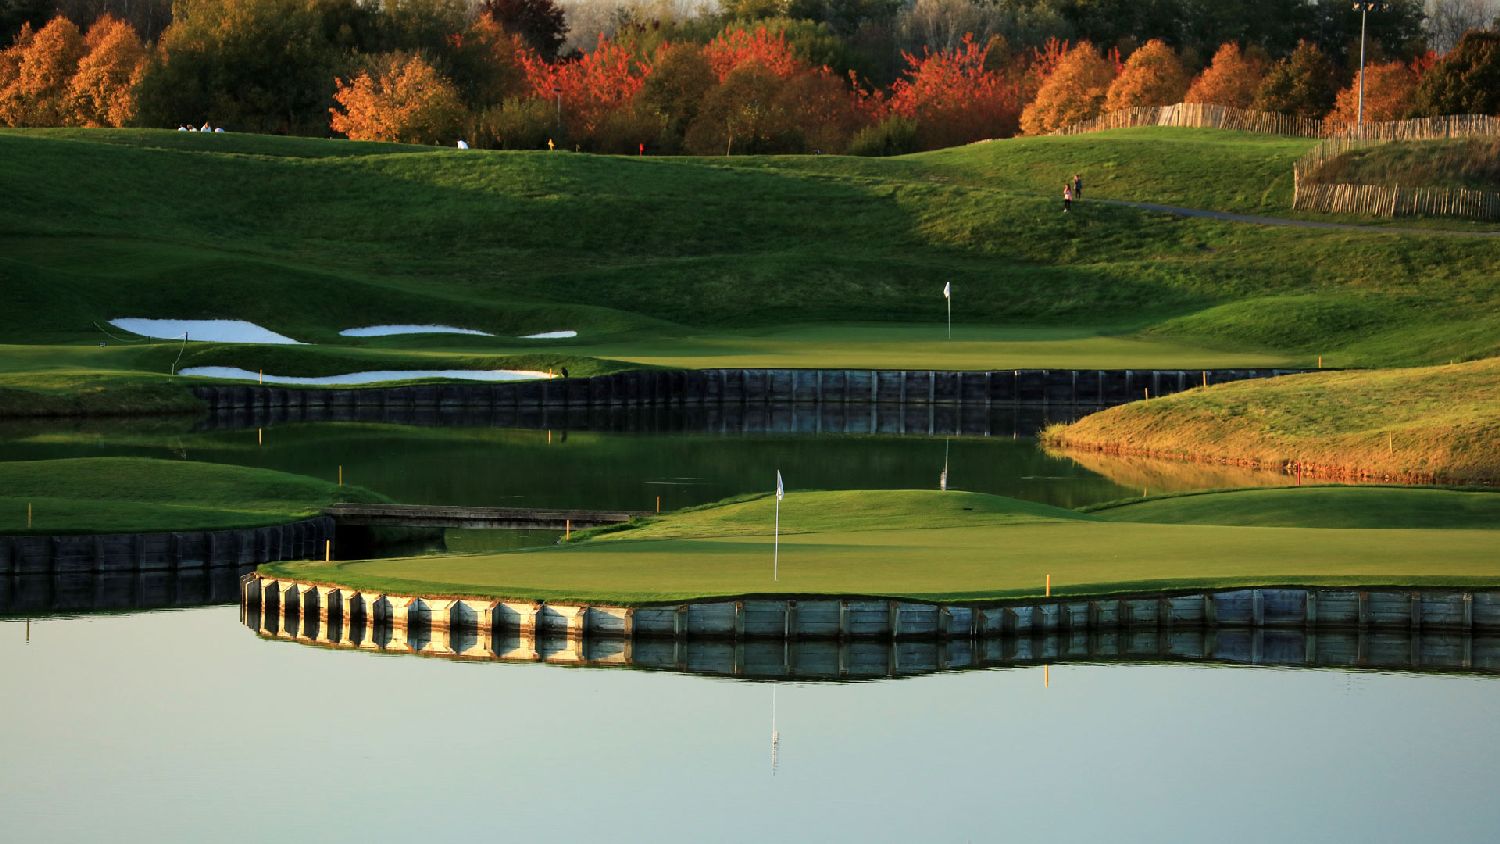 golf-expedition-golf-reizen-frankrijk-regio-parijs-trianon-palace-versailles-water-met-golfbaan.jpg